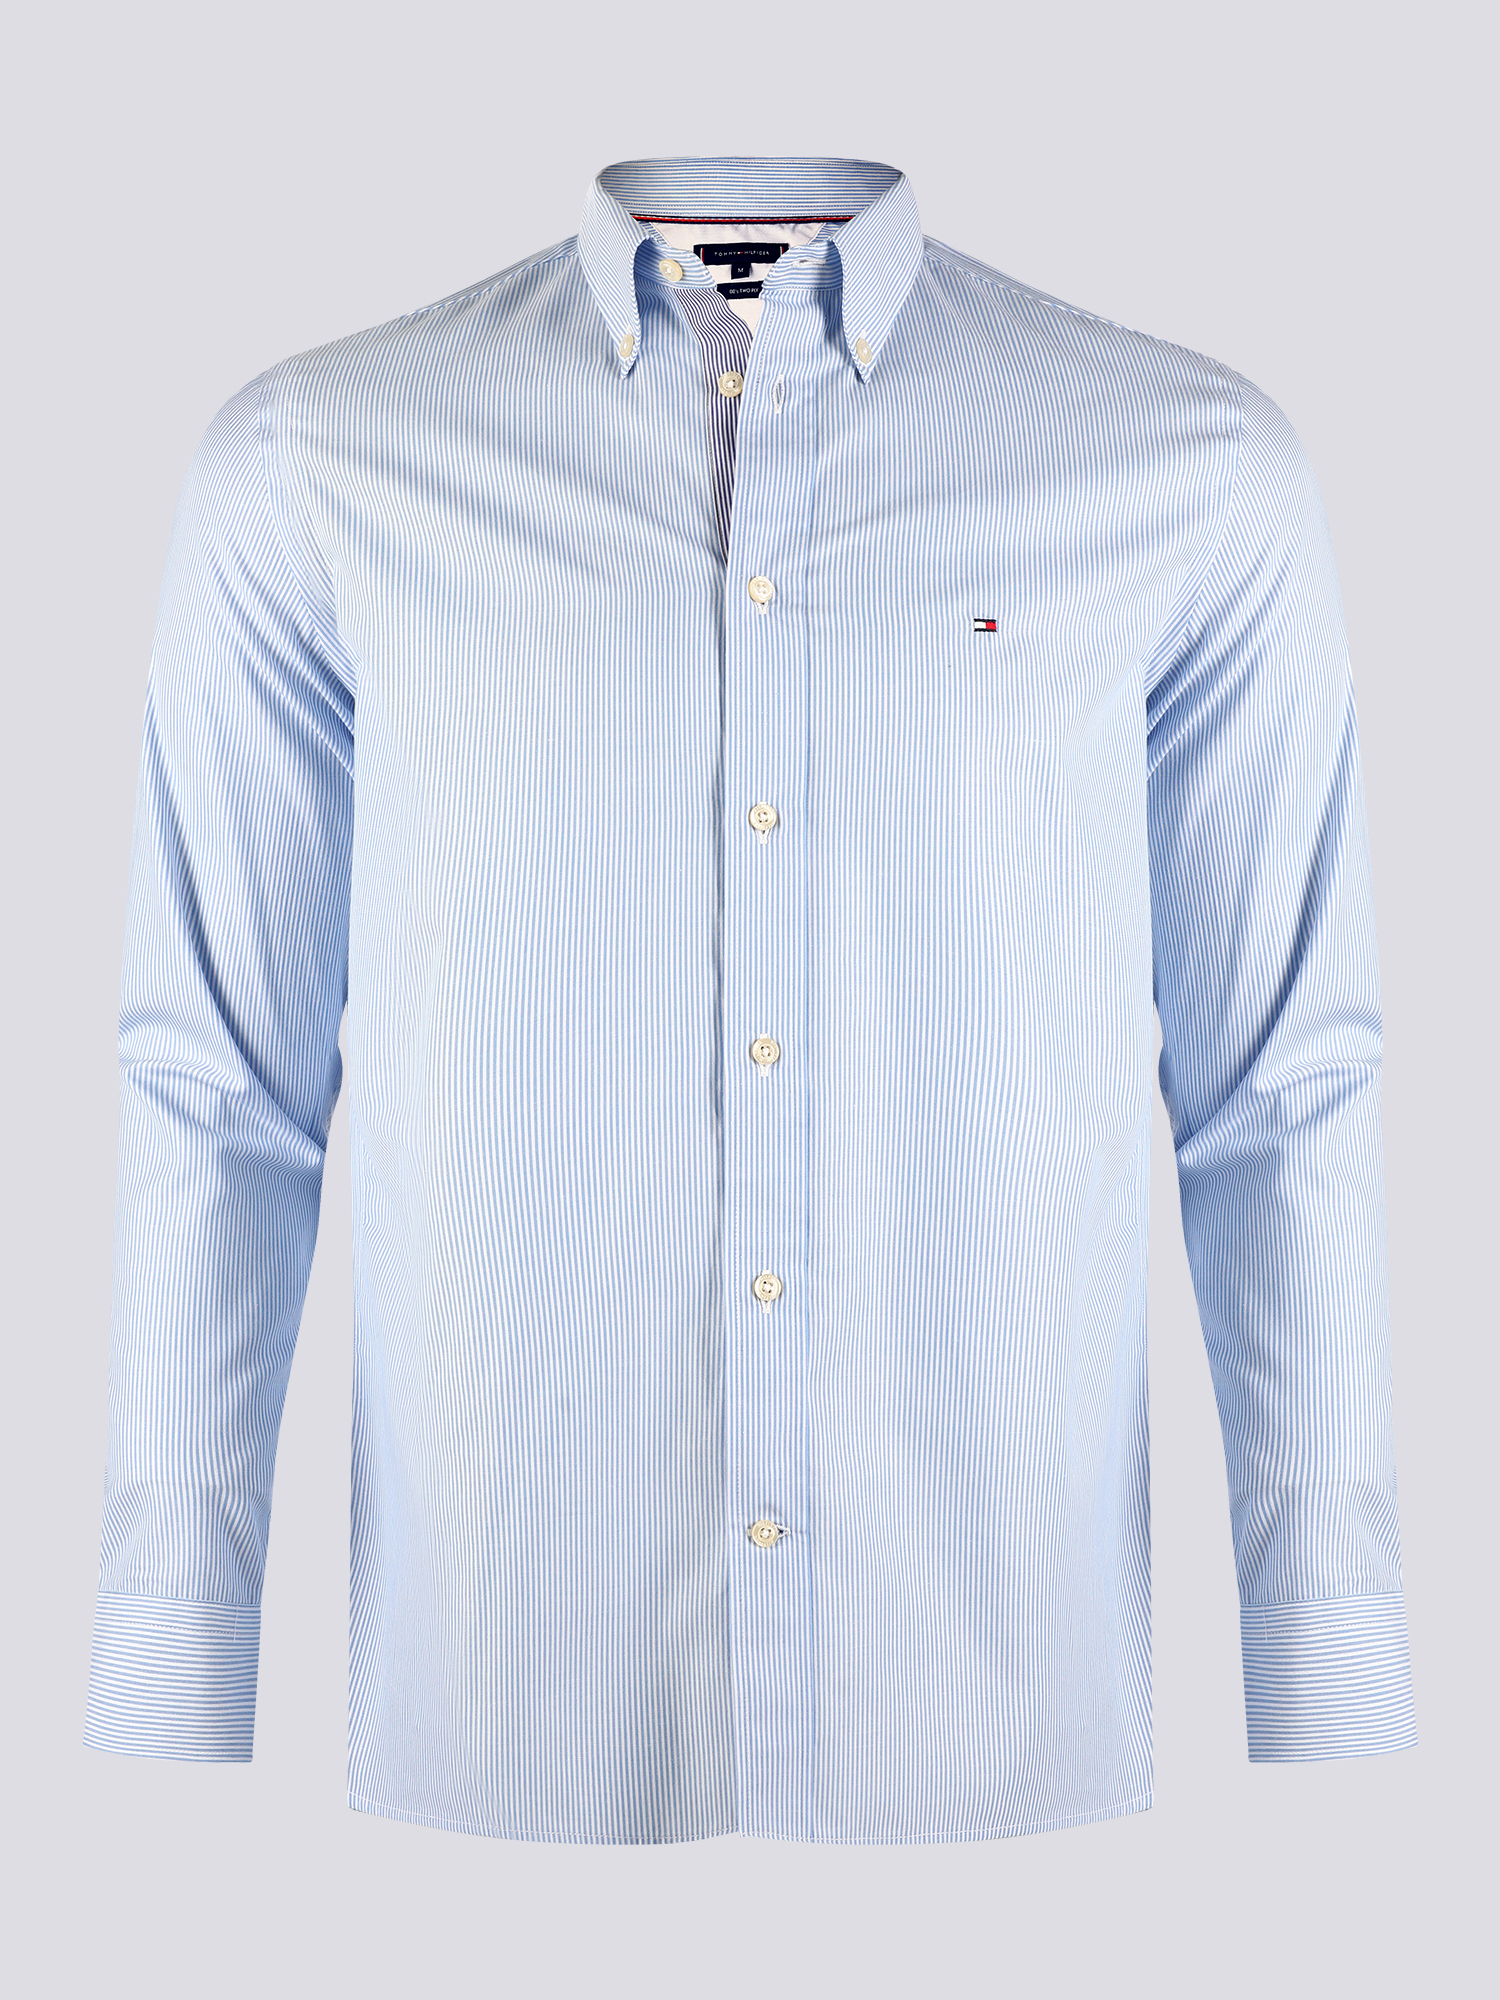 dine Regeneration til Tommy Hilfiger Blue/White Striped Shirt - Outlet Fashion